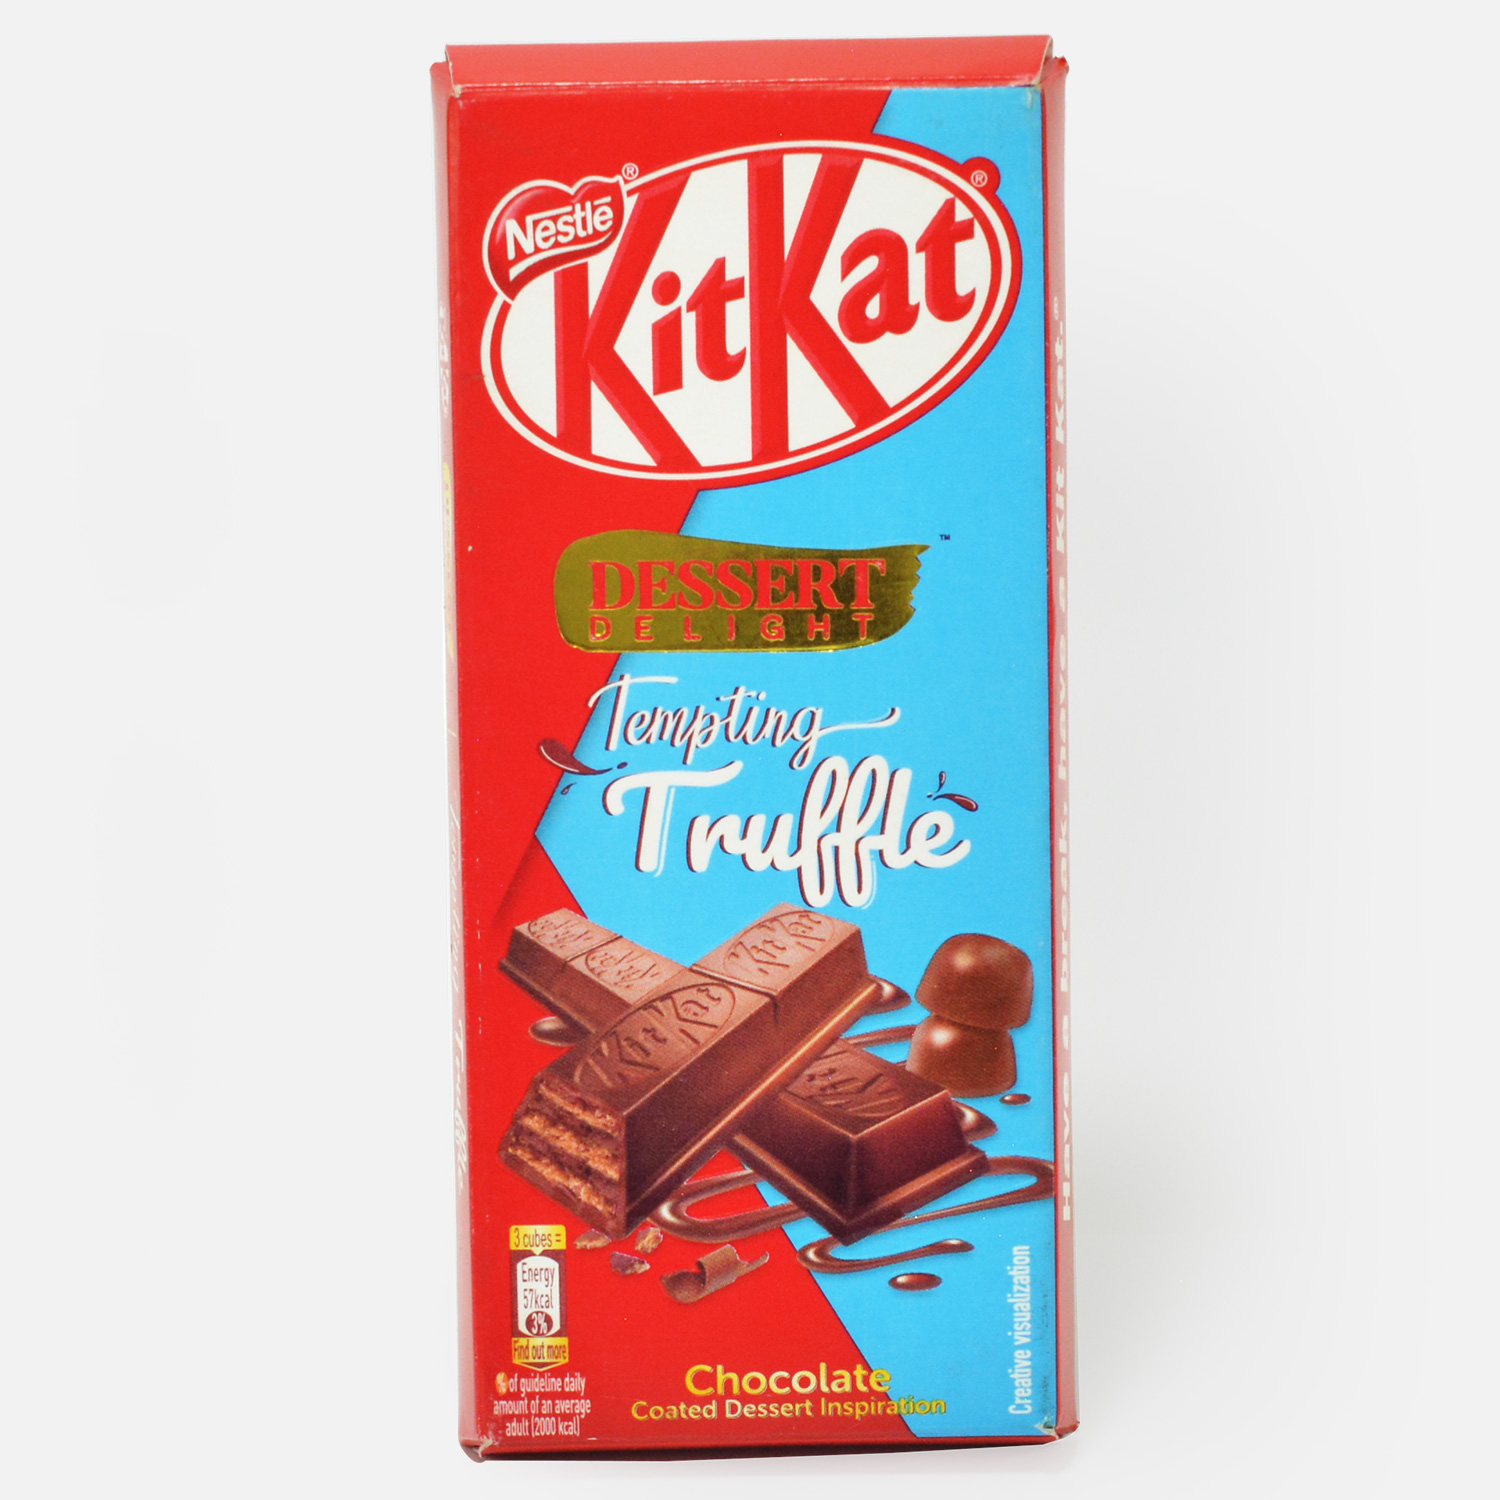 Kitkat Desert Delight Tempting Truffle Chocolate